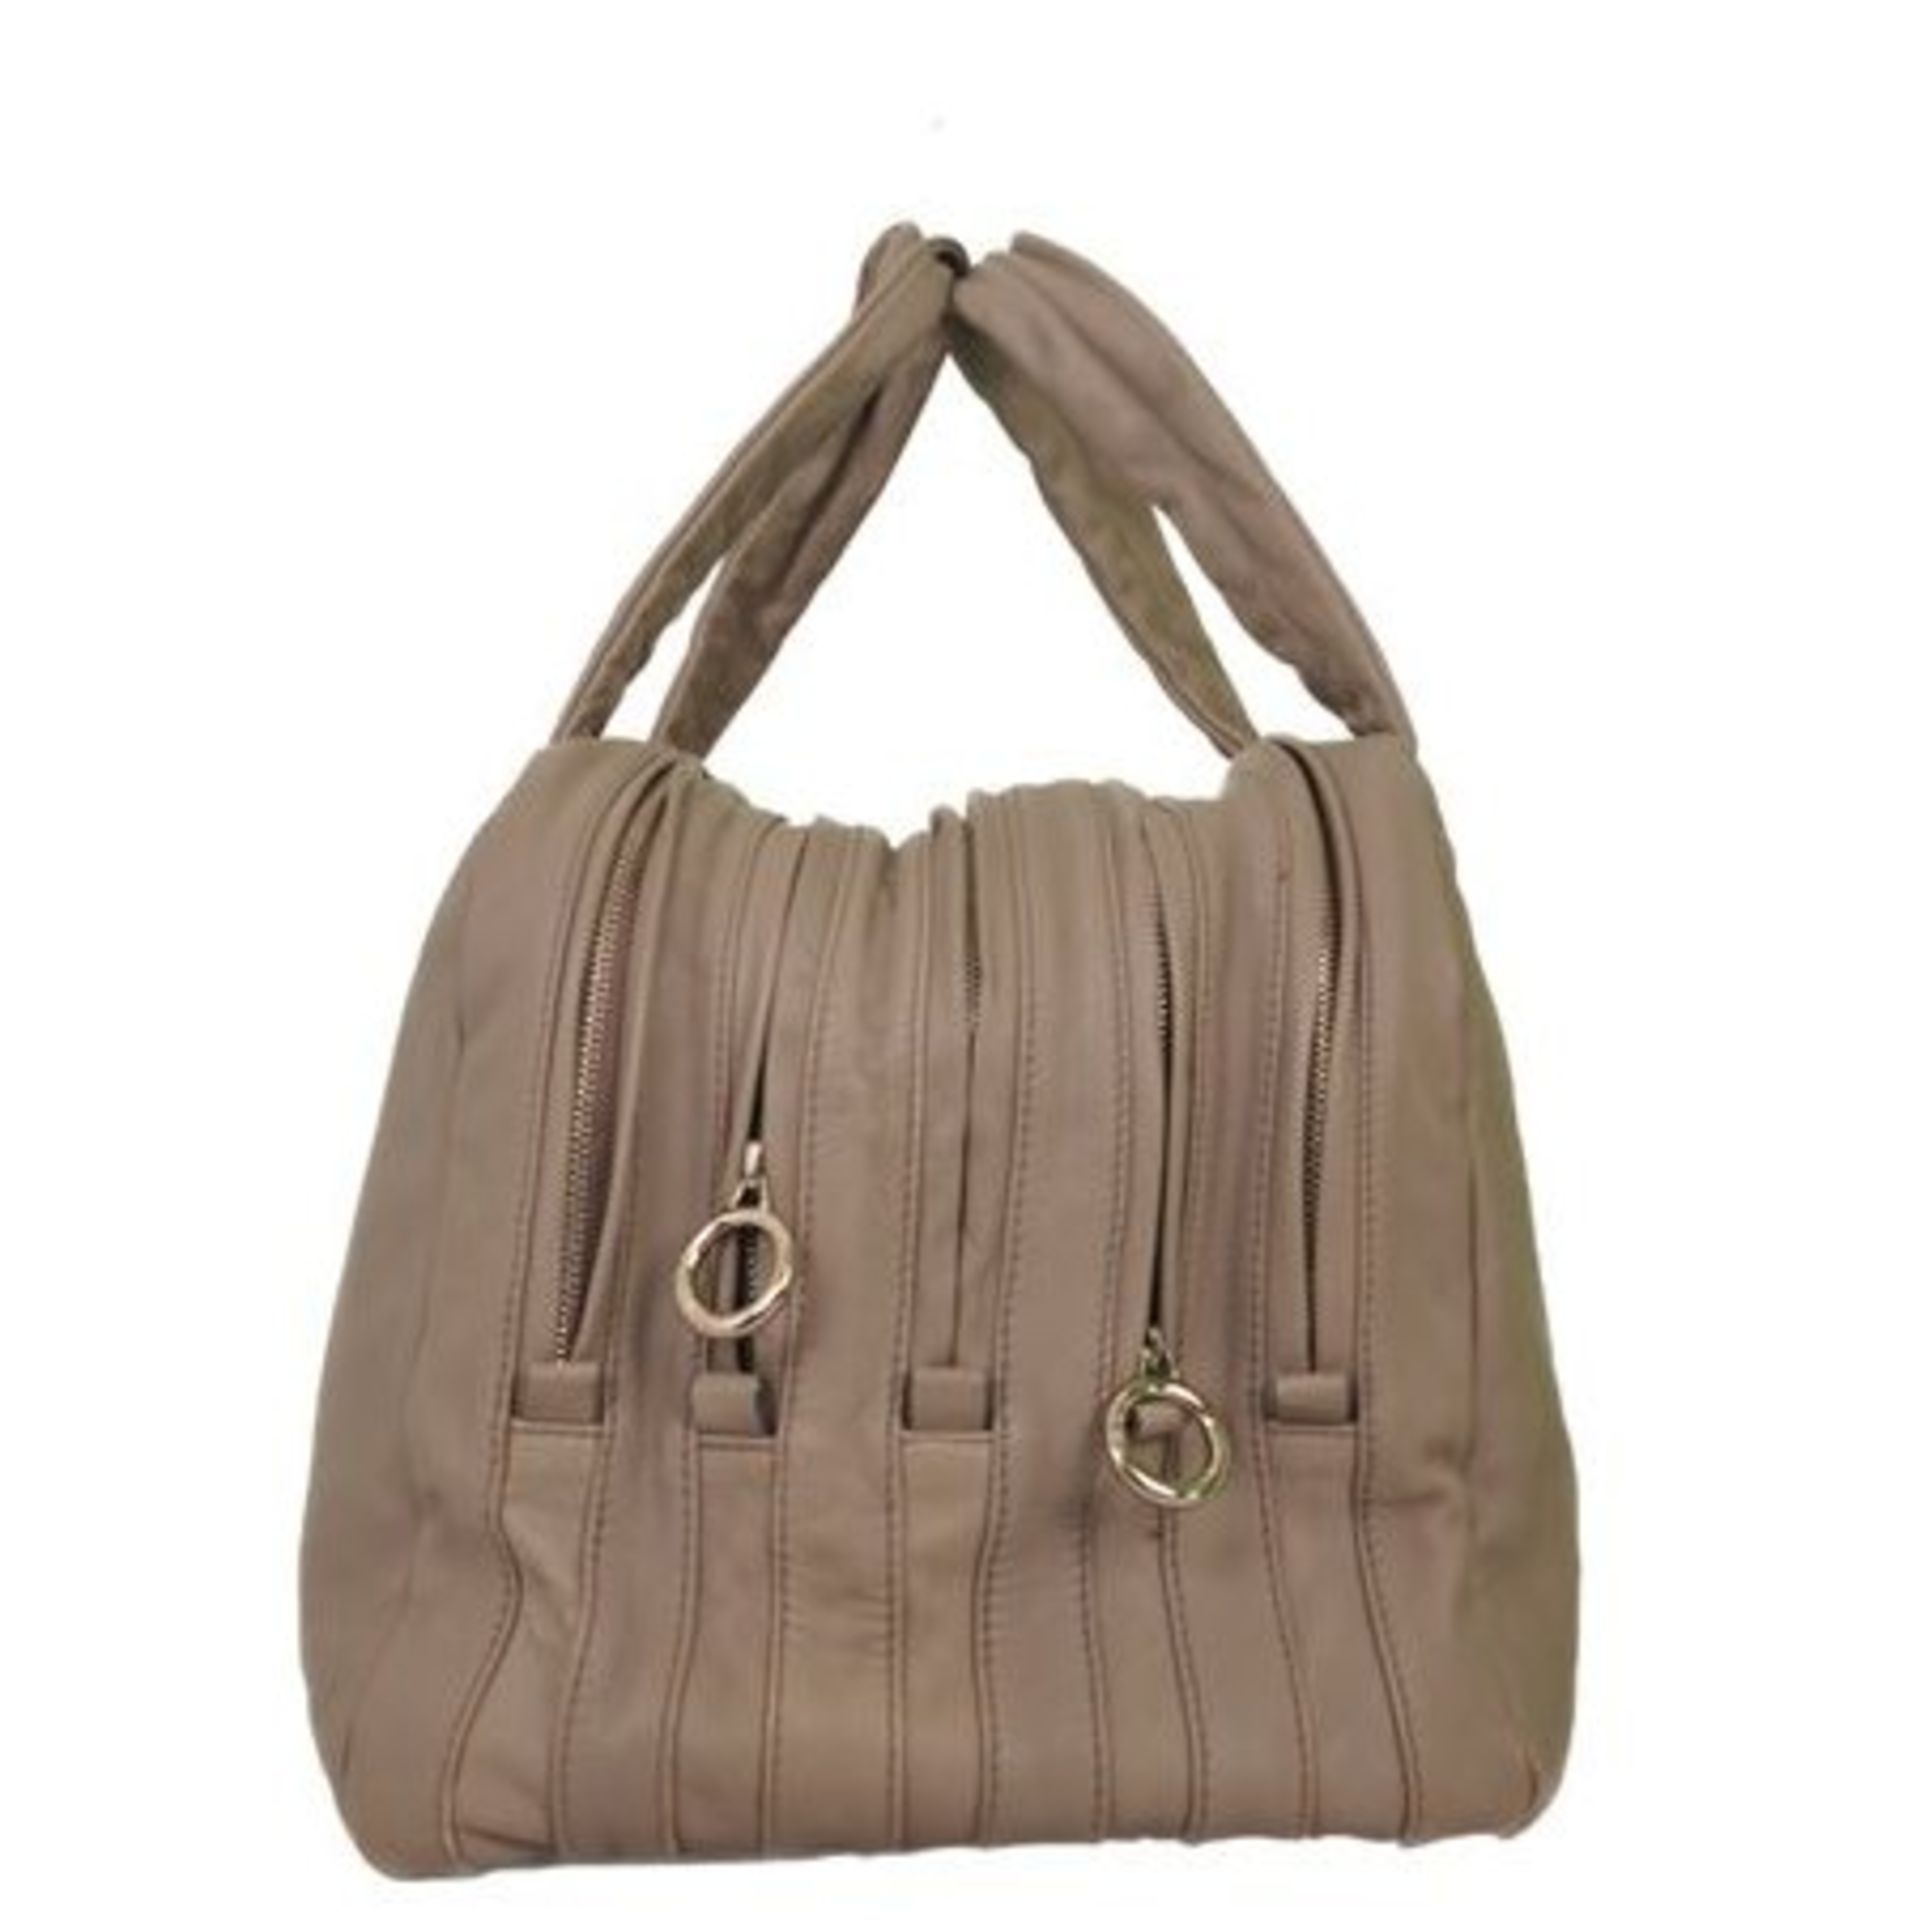 Dolce & Gabbana Lily Soft Leather Shoulder Bag - Image 3 of 6